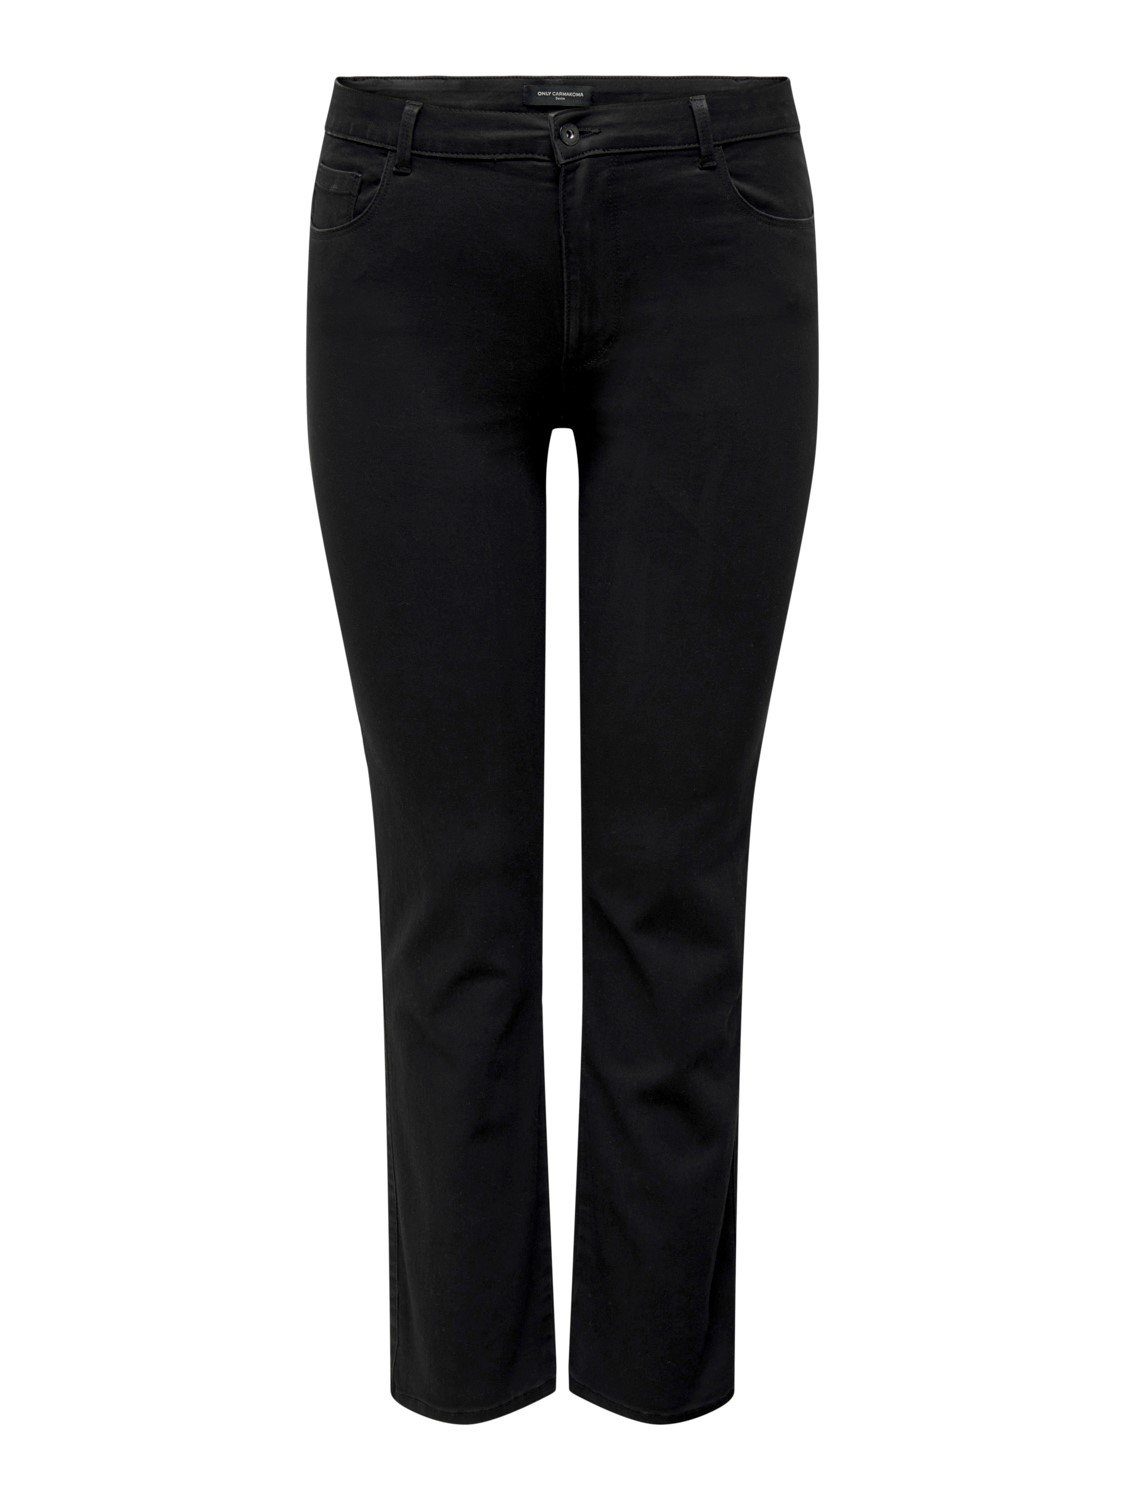 Stretch ONLY mit großen Skinny-fit-Jeans in BLACK CARAUGUSTA Größen